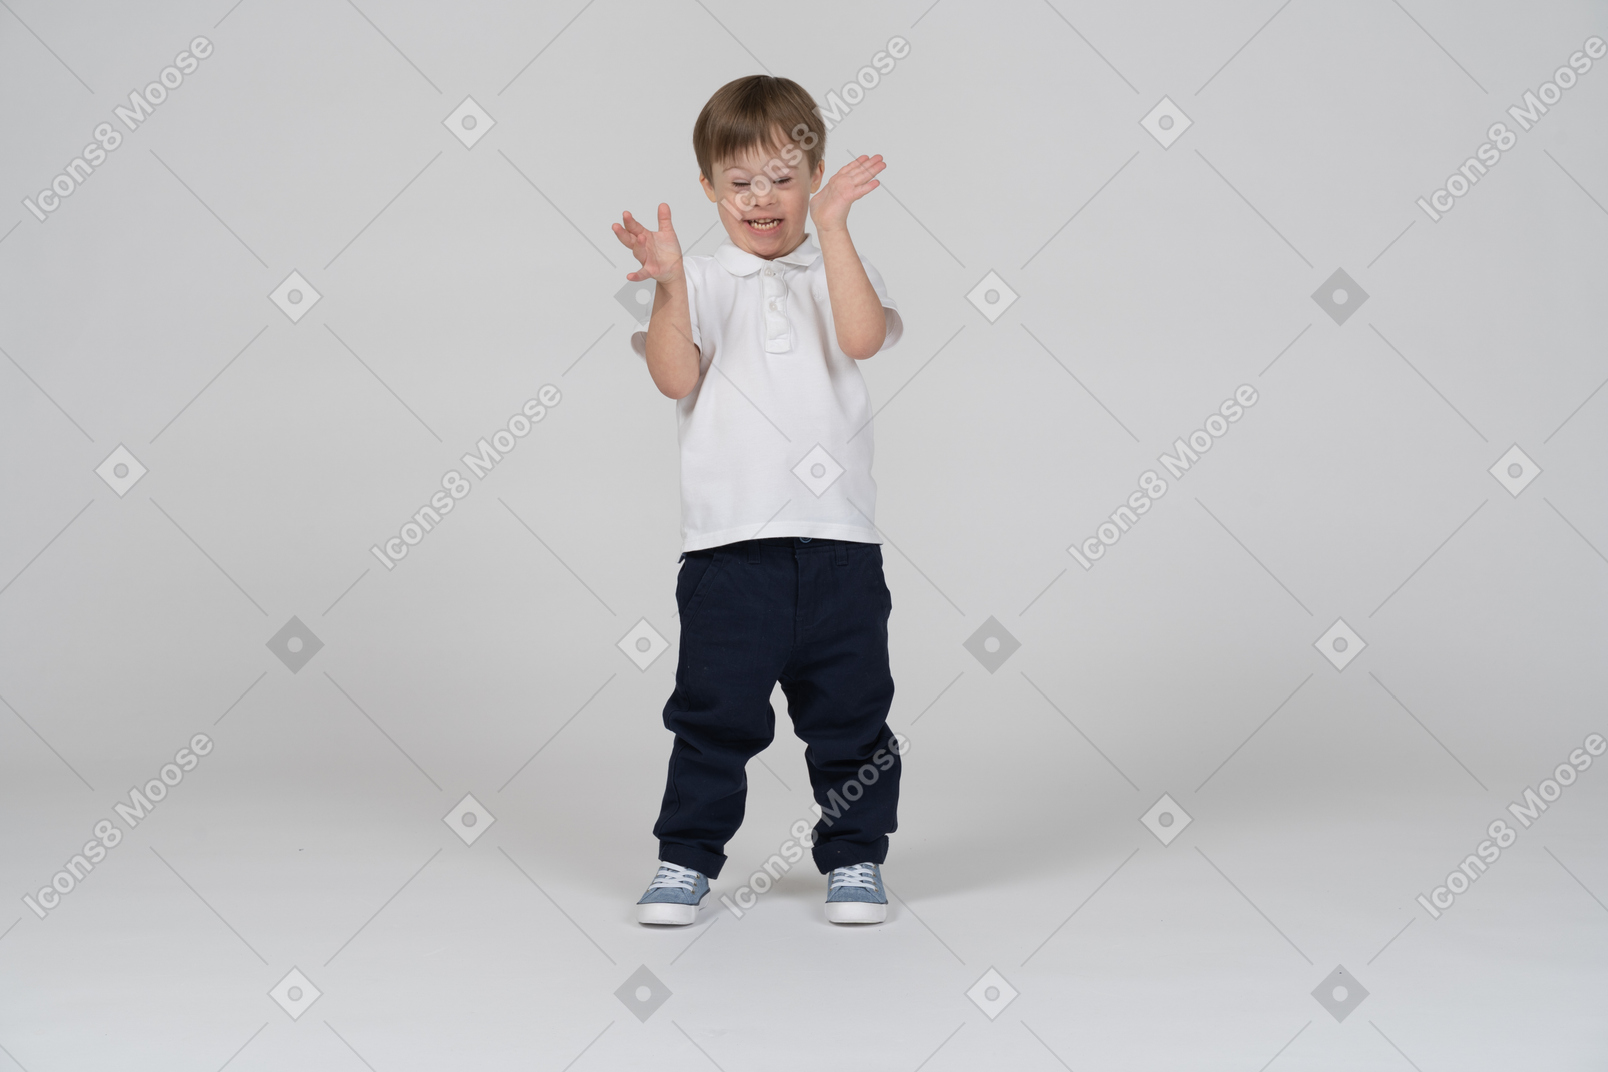 Vista frontal de um menino sorrindo e gesticulando animadamente com as mãos